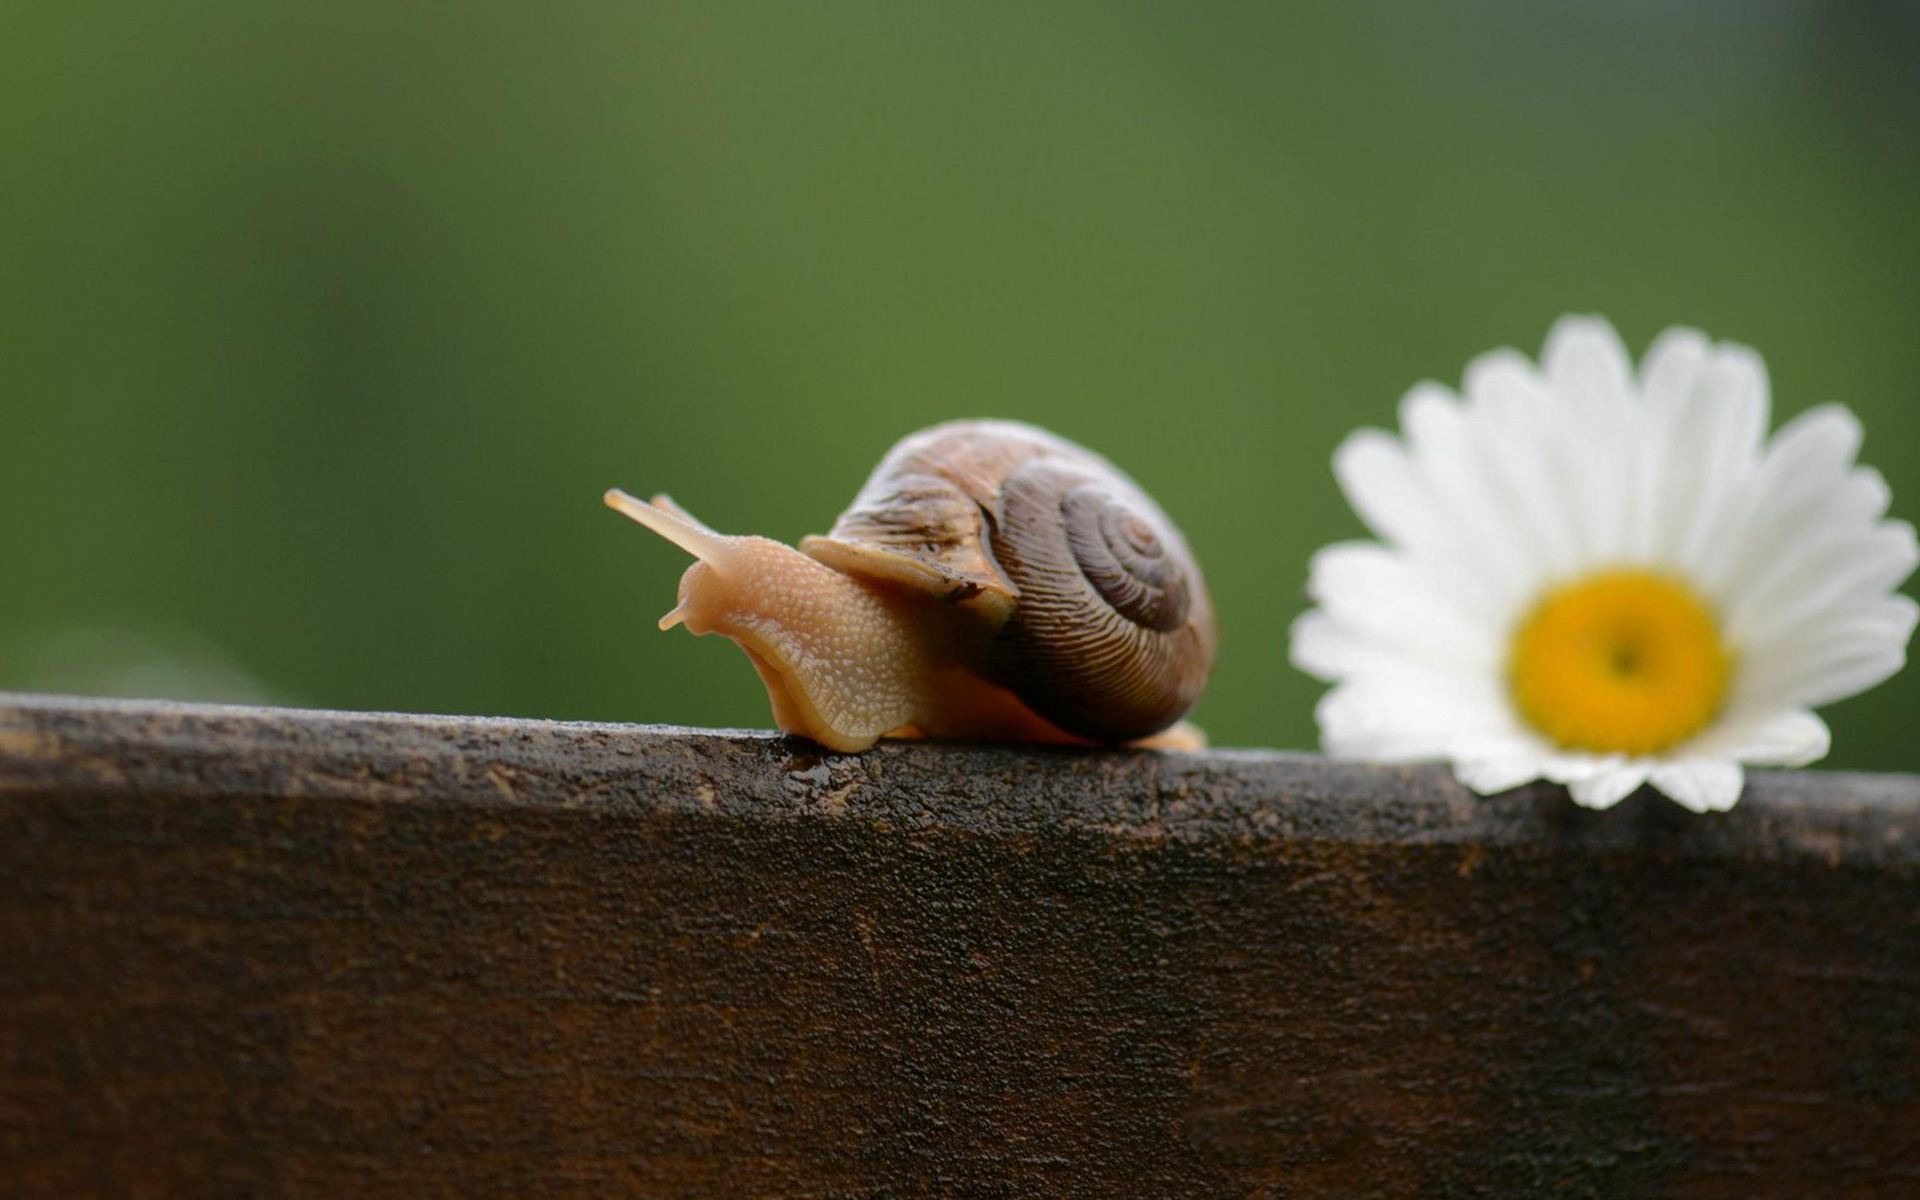 Cute Snail Wallpaper Hd - Movimiento Slow - HD Wallpaper 